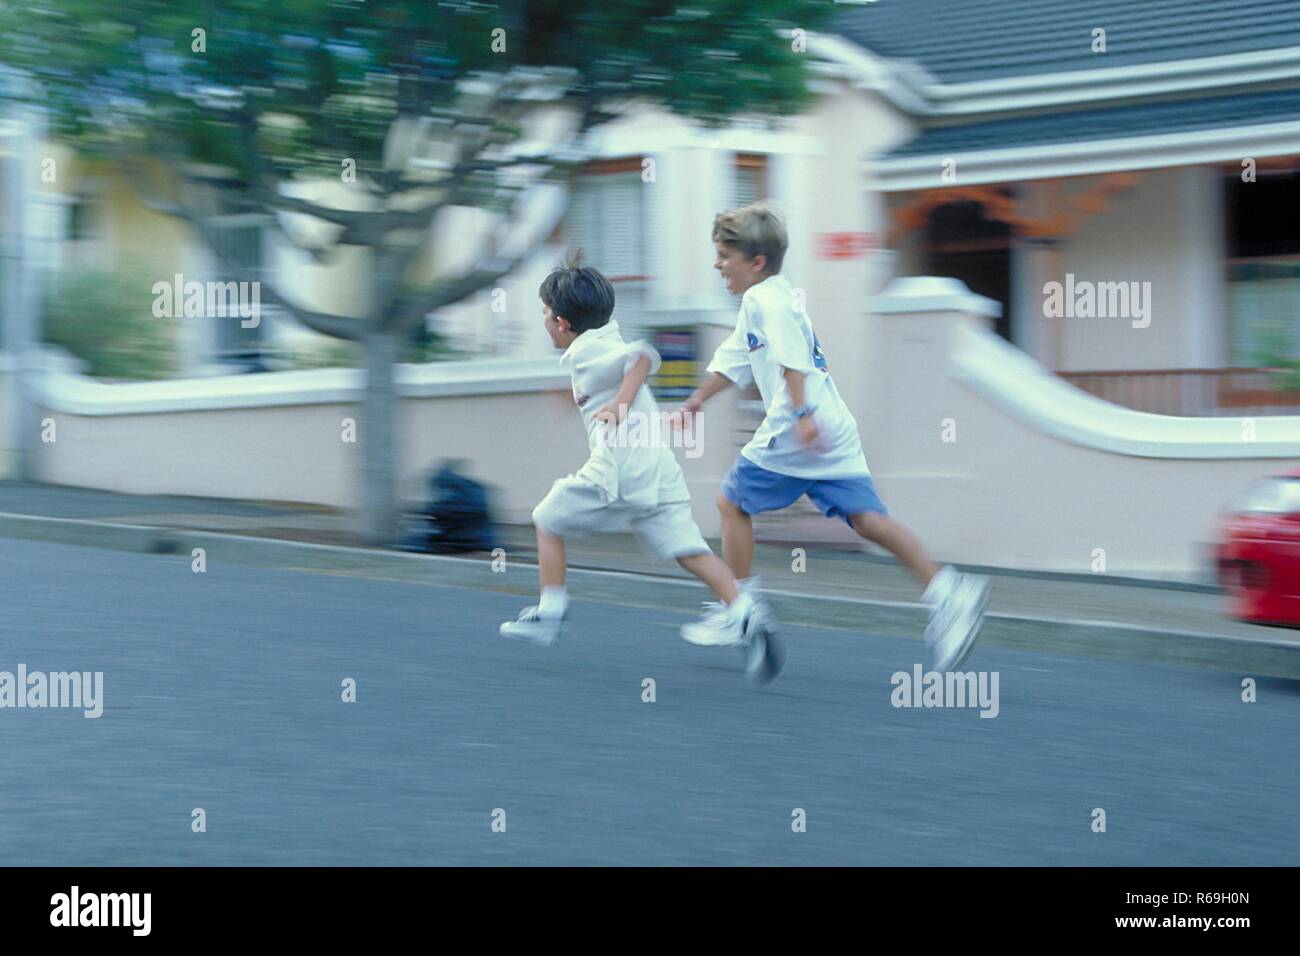 Ritratto, Ganzfigur, zwei 7-8 Jahre alte Jungen bekleidet mit weissen T-Shirts und Shorts laufen un einem Haus vorbei die Strasse entlang Foto Stock